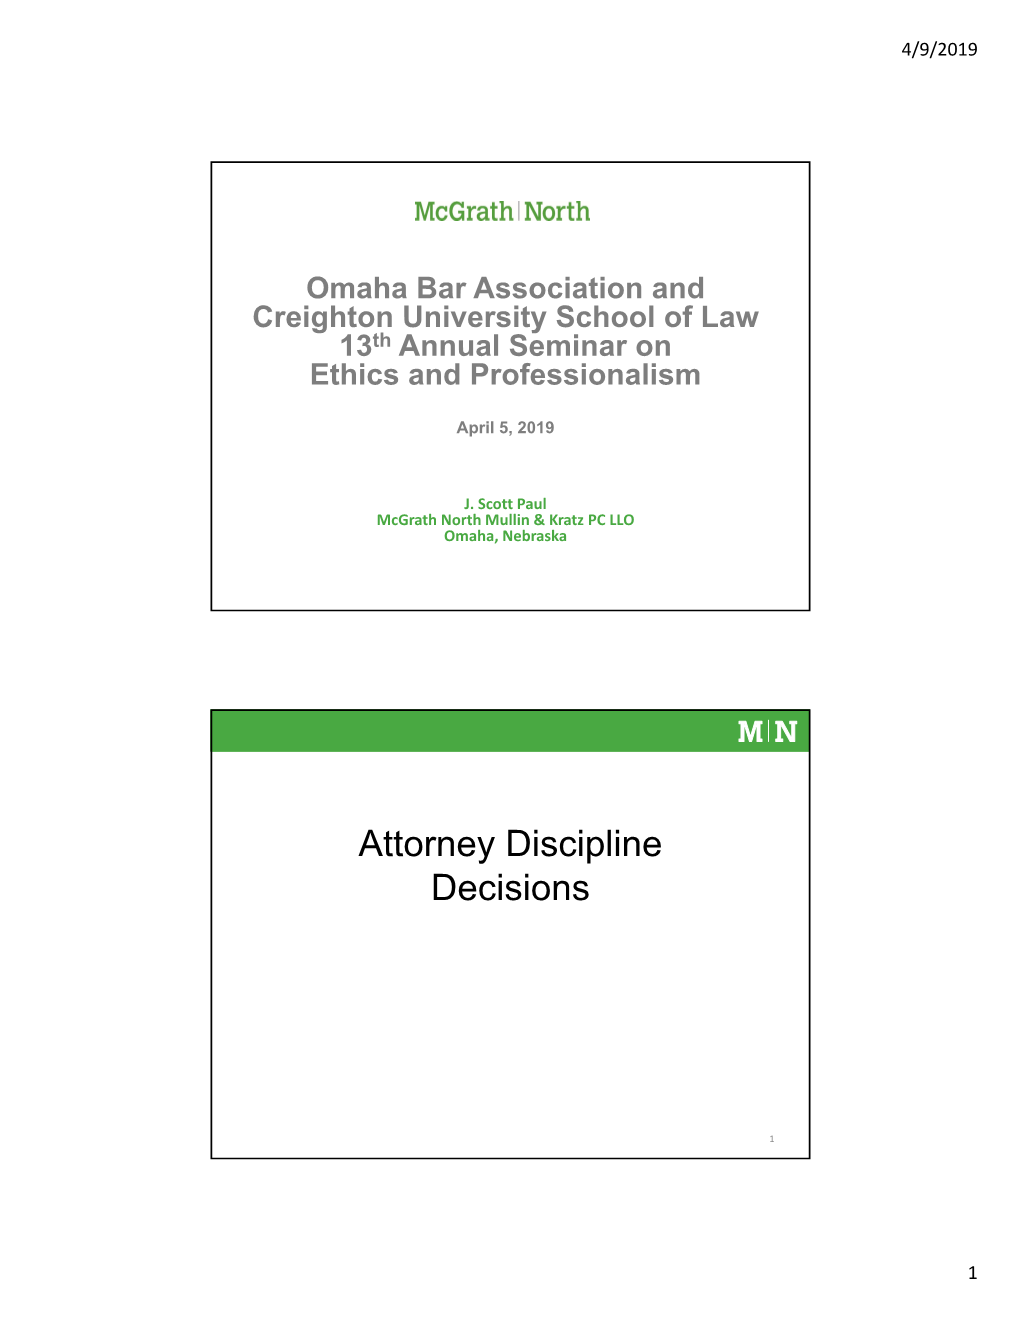 Attorney Discipline Decisions